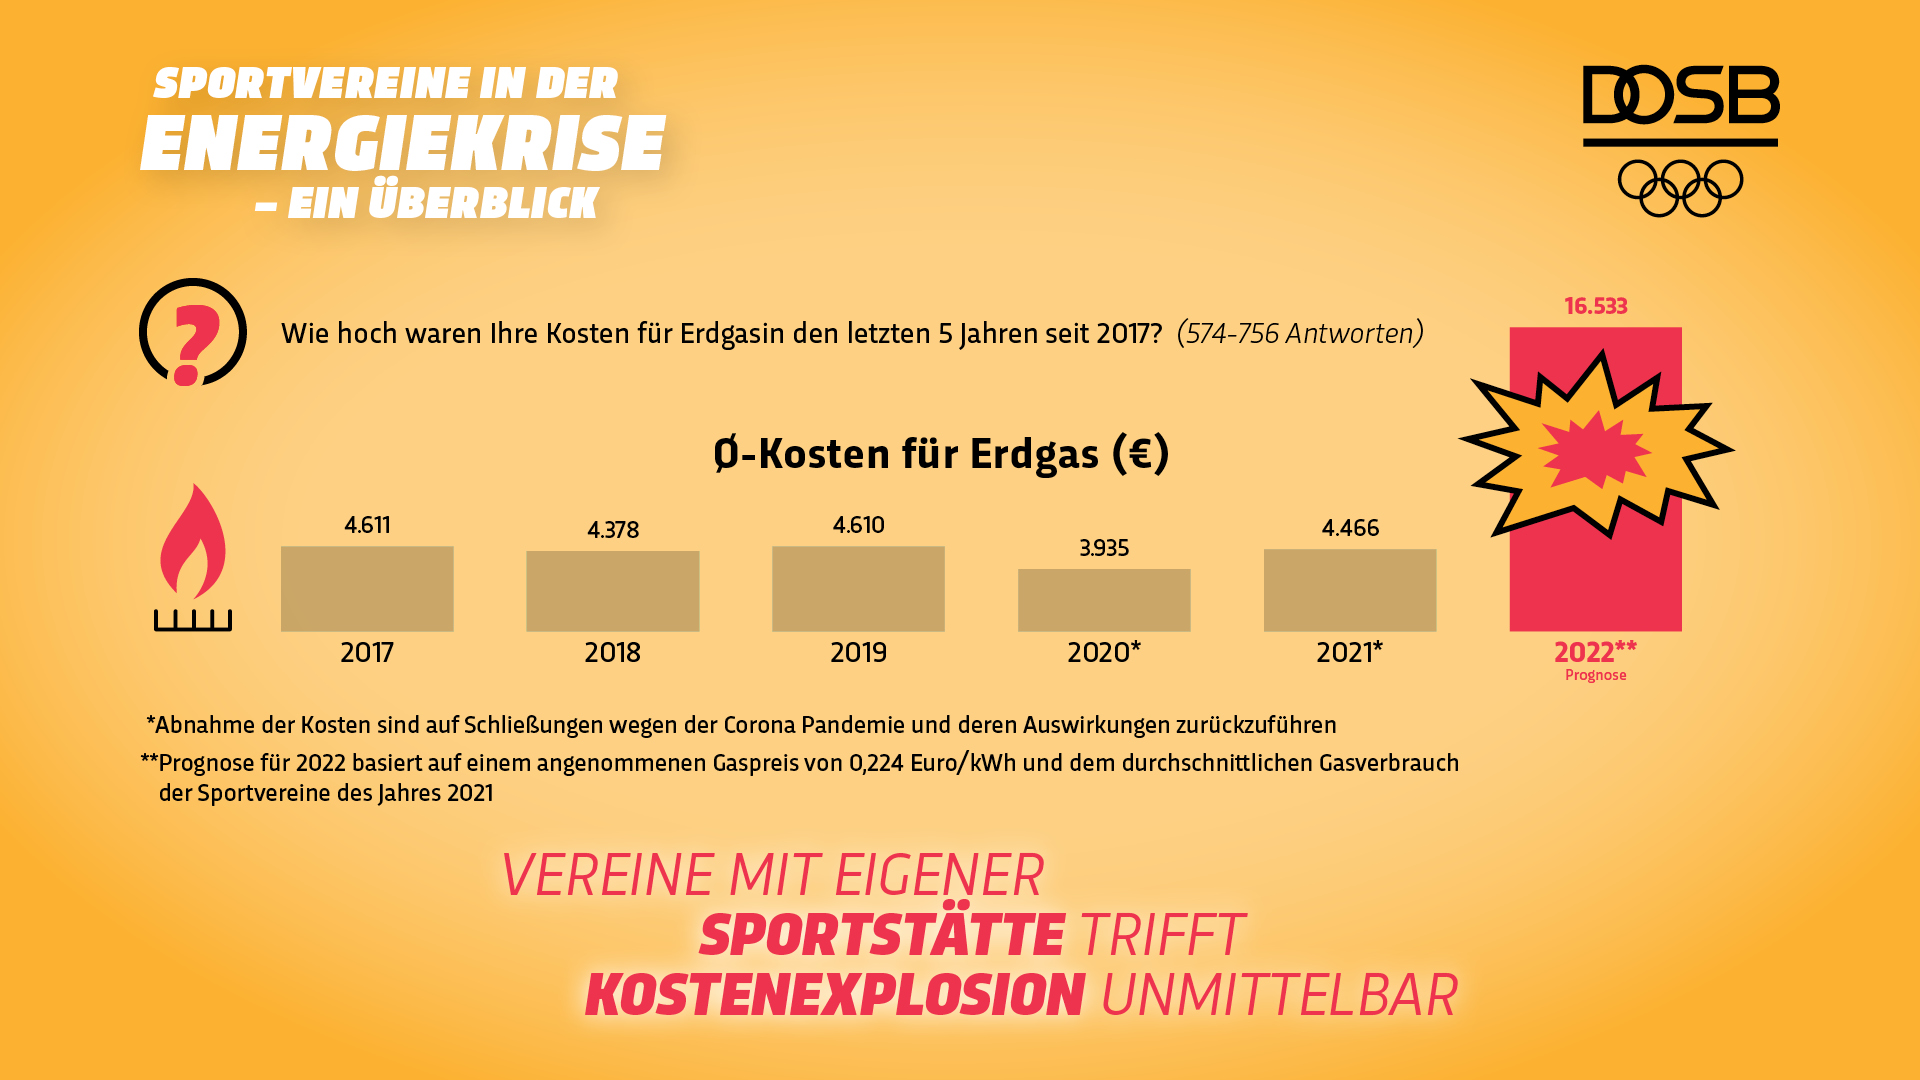 DOSB-Infografiken "Sportvereine in der Energiekrise".